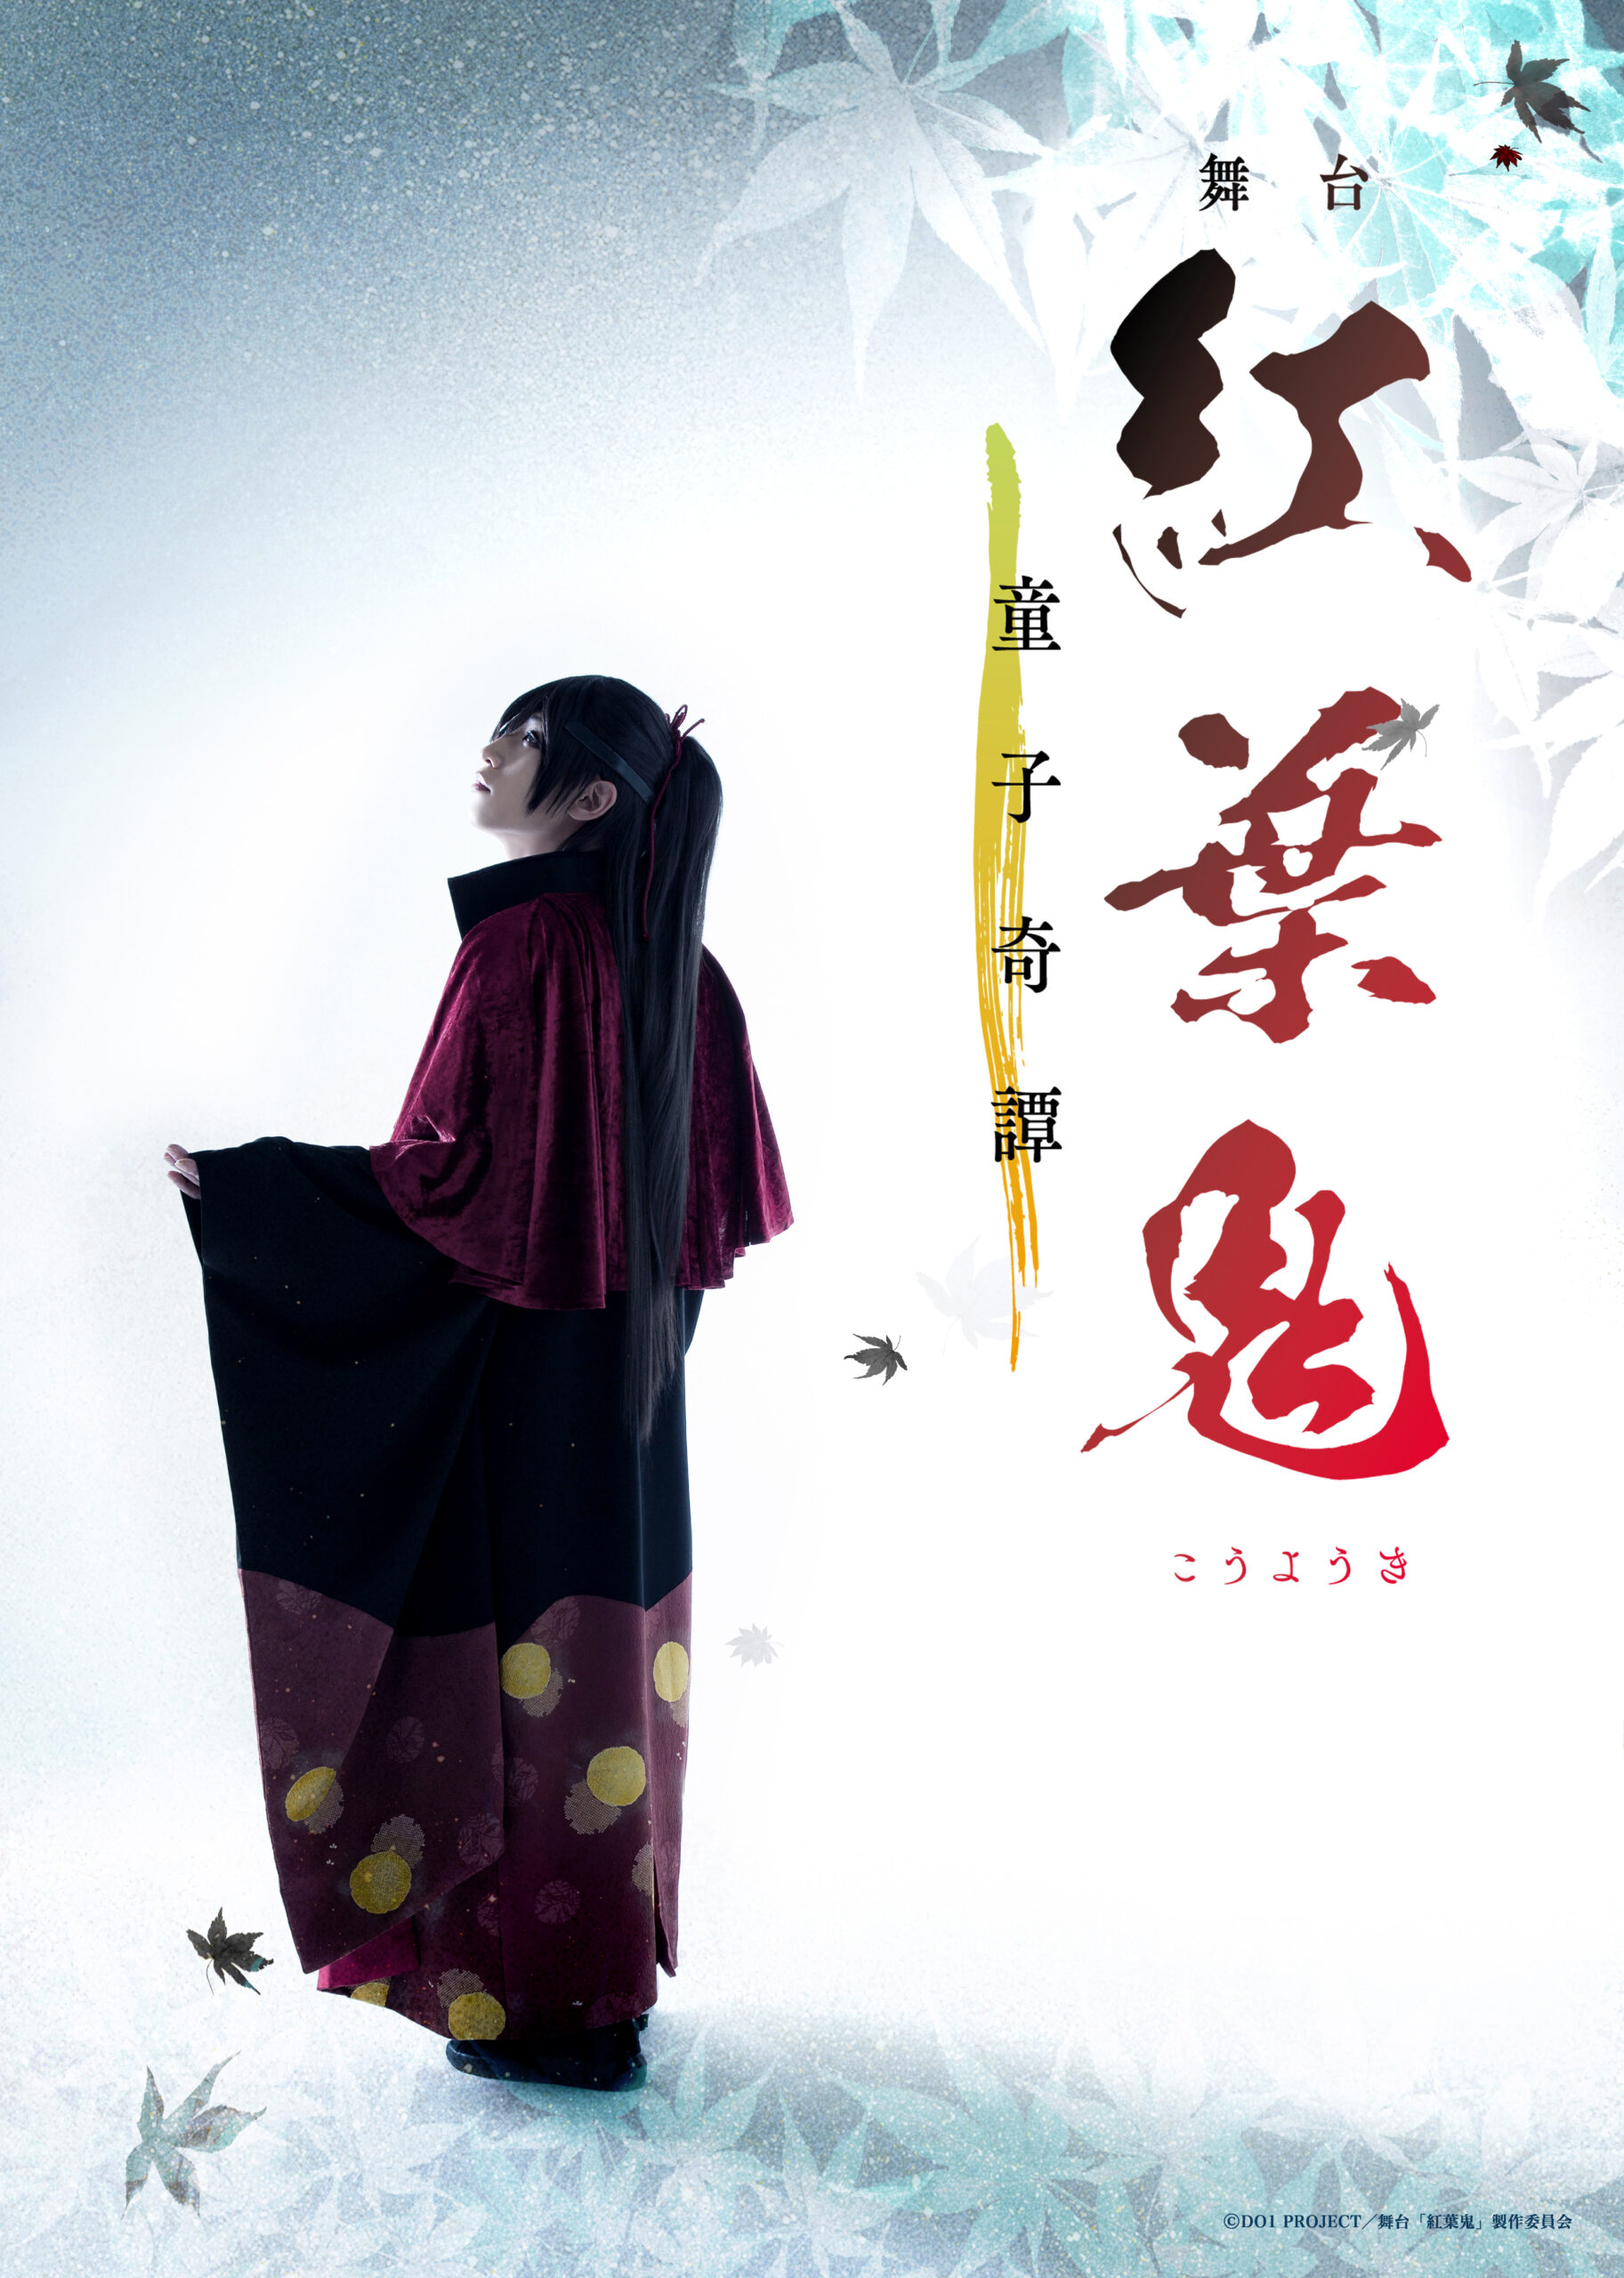 小坂涼太郎が1 8 14上演 舞台 紅葉鬼 童子奇譚 に出演 ジュネスプロダクション